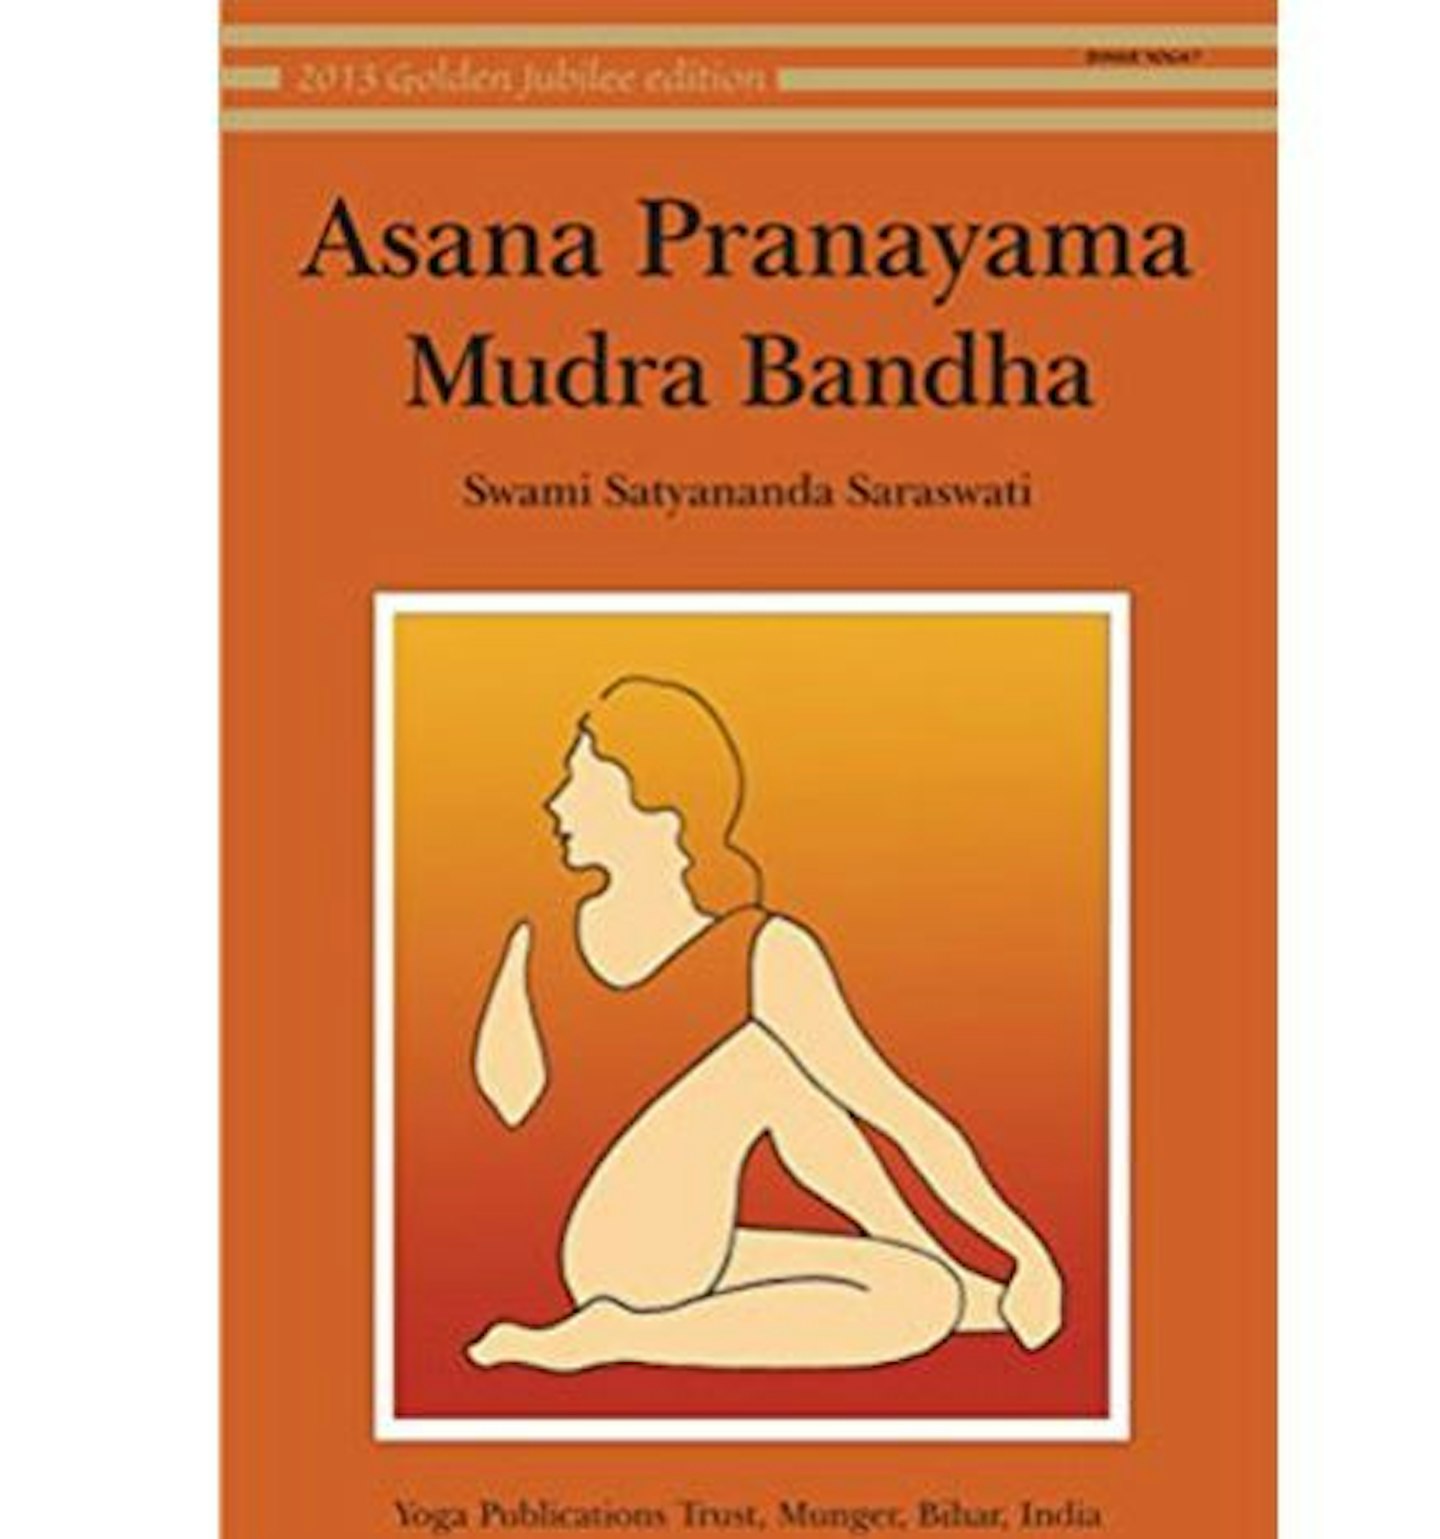 Asana, Pyanayama, Mudra and Bandha u2013 Saraswati Satyananda Swami